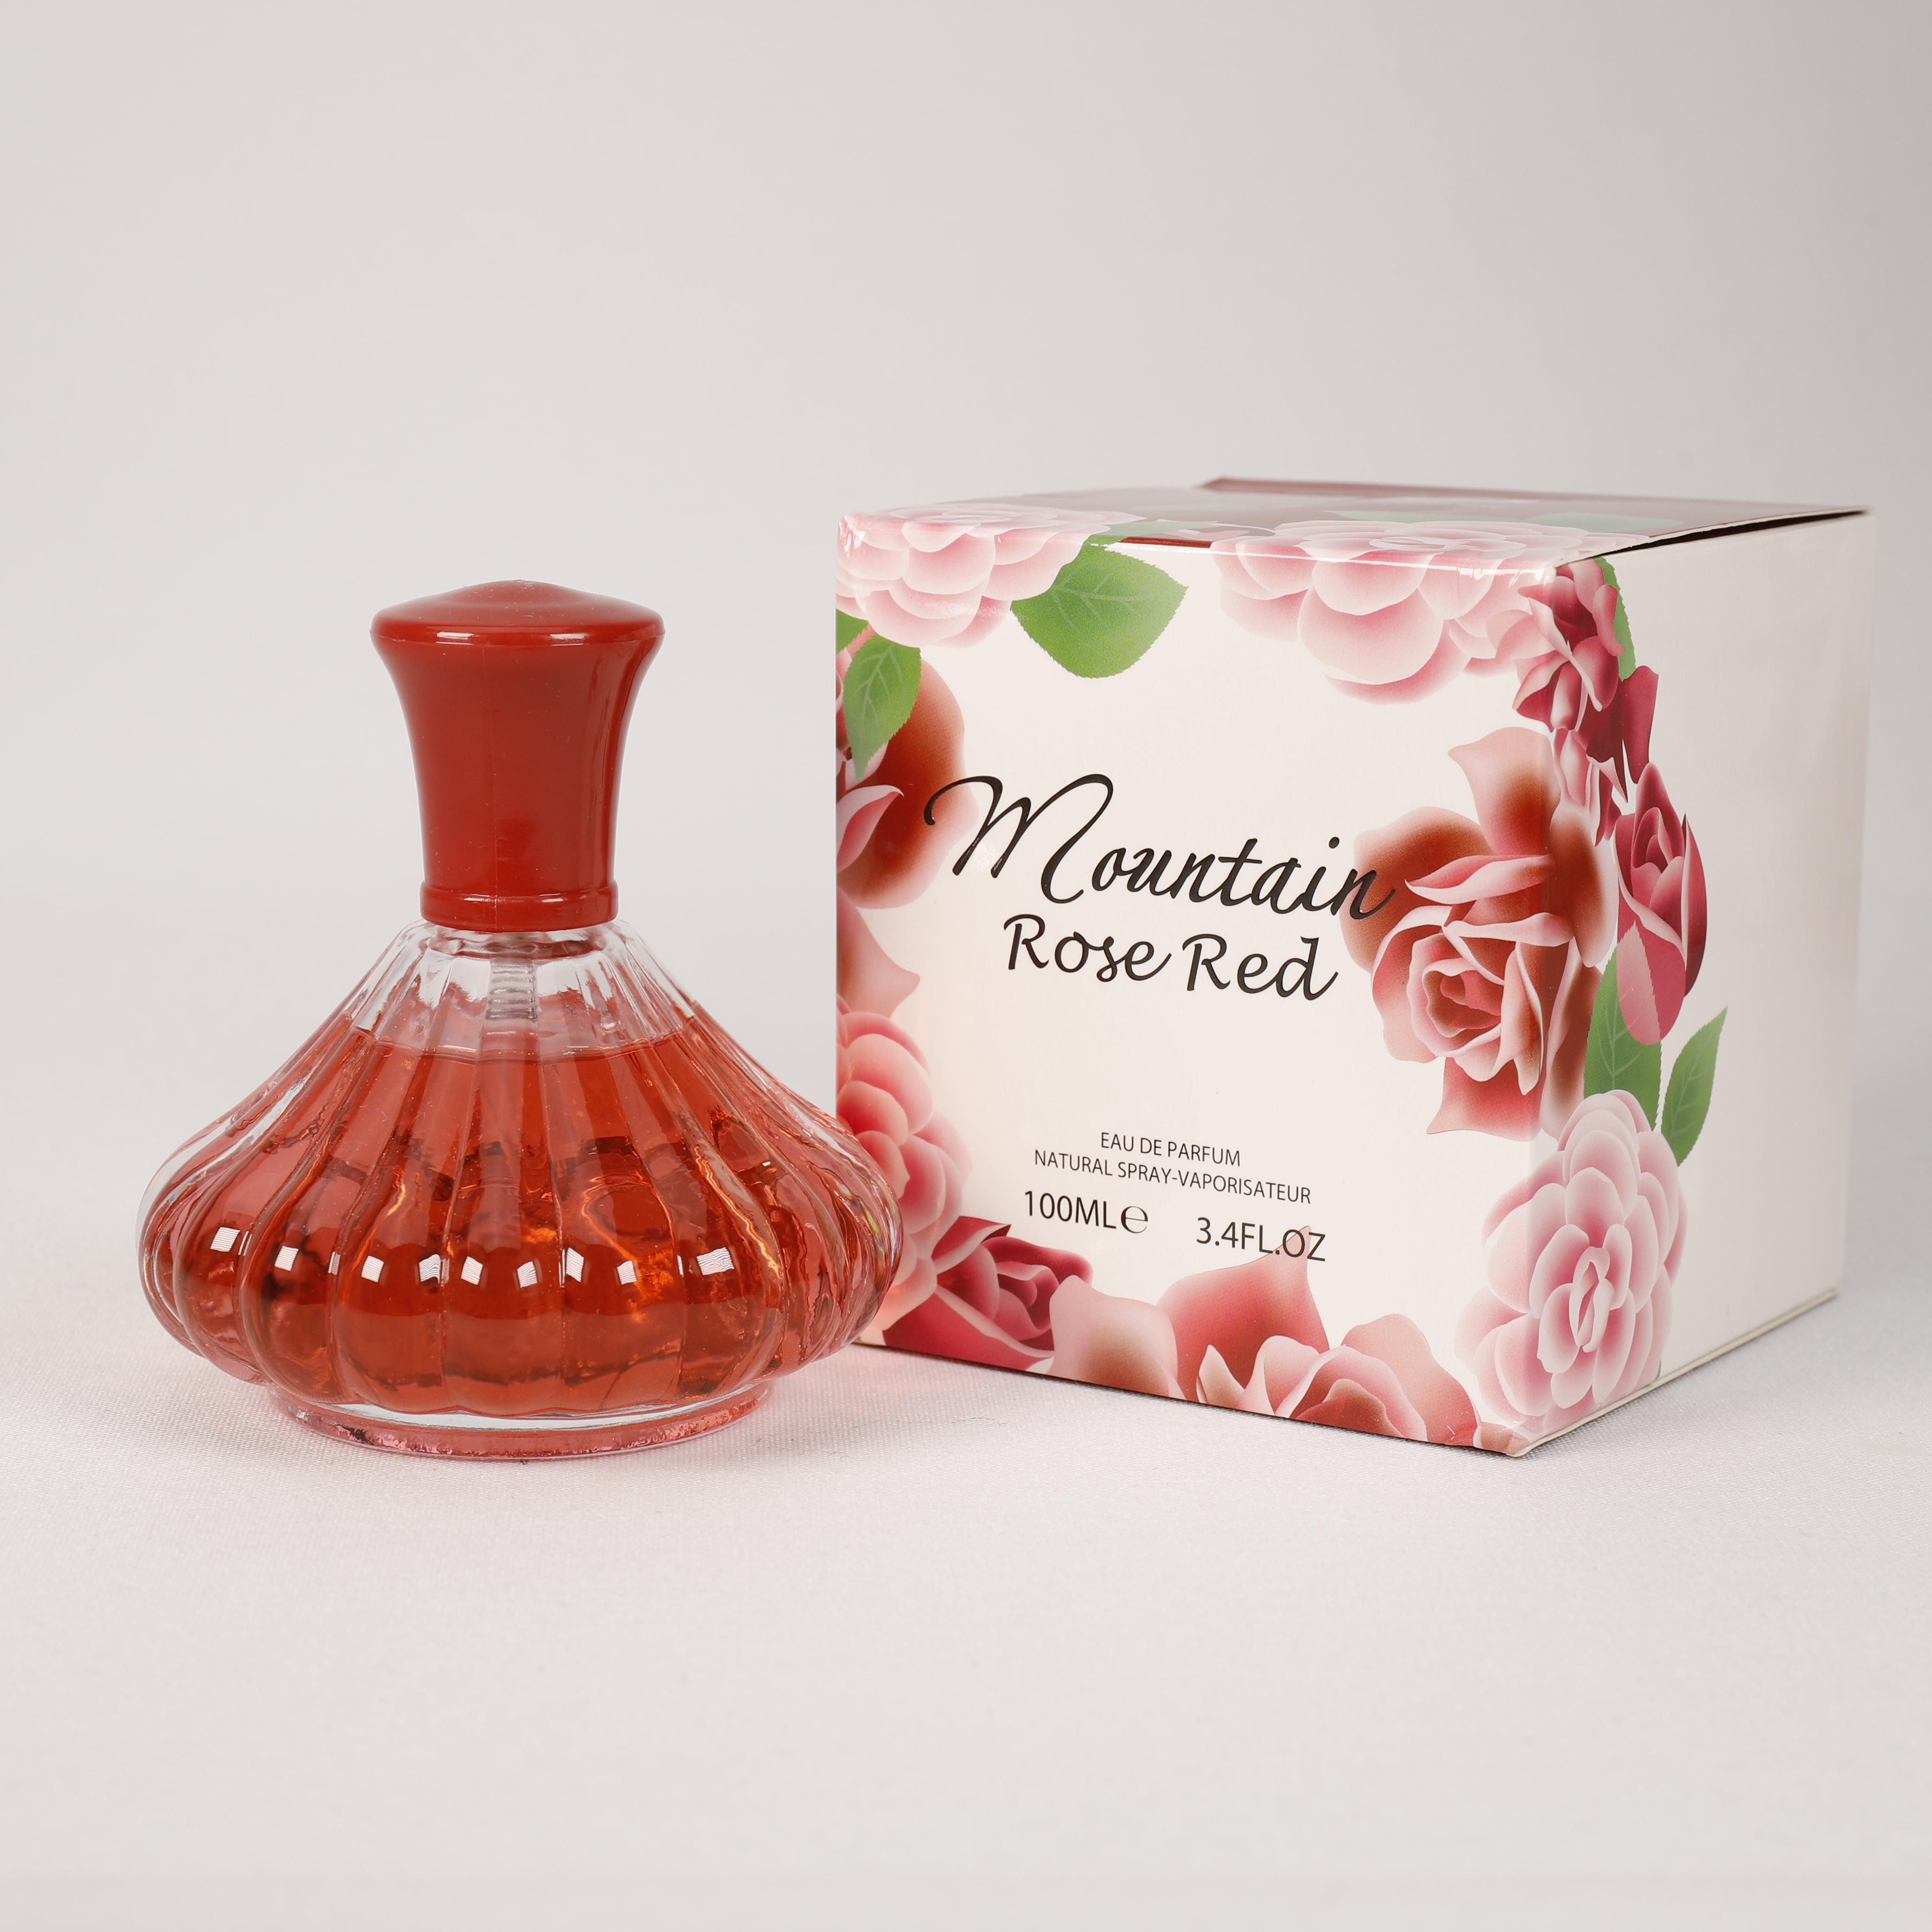 Mountain Rose Red für Damen, Vaporizer mit natürlichem Spray, 100 ml, Duft, TOP Parfüm, NEU OVP